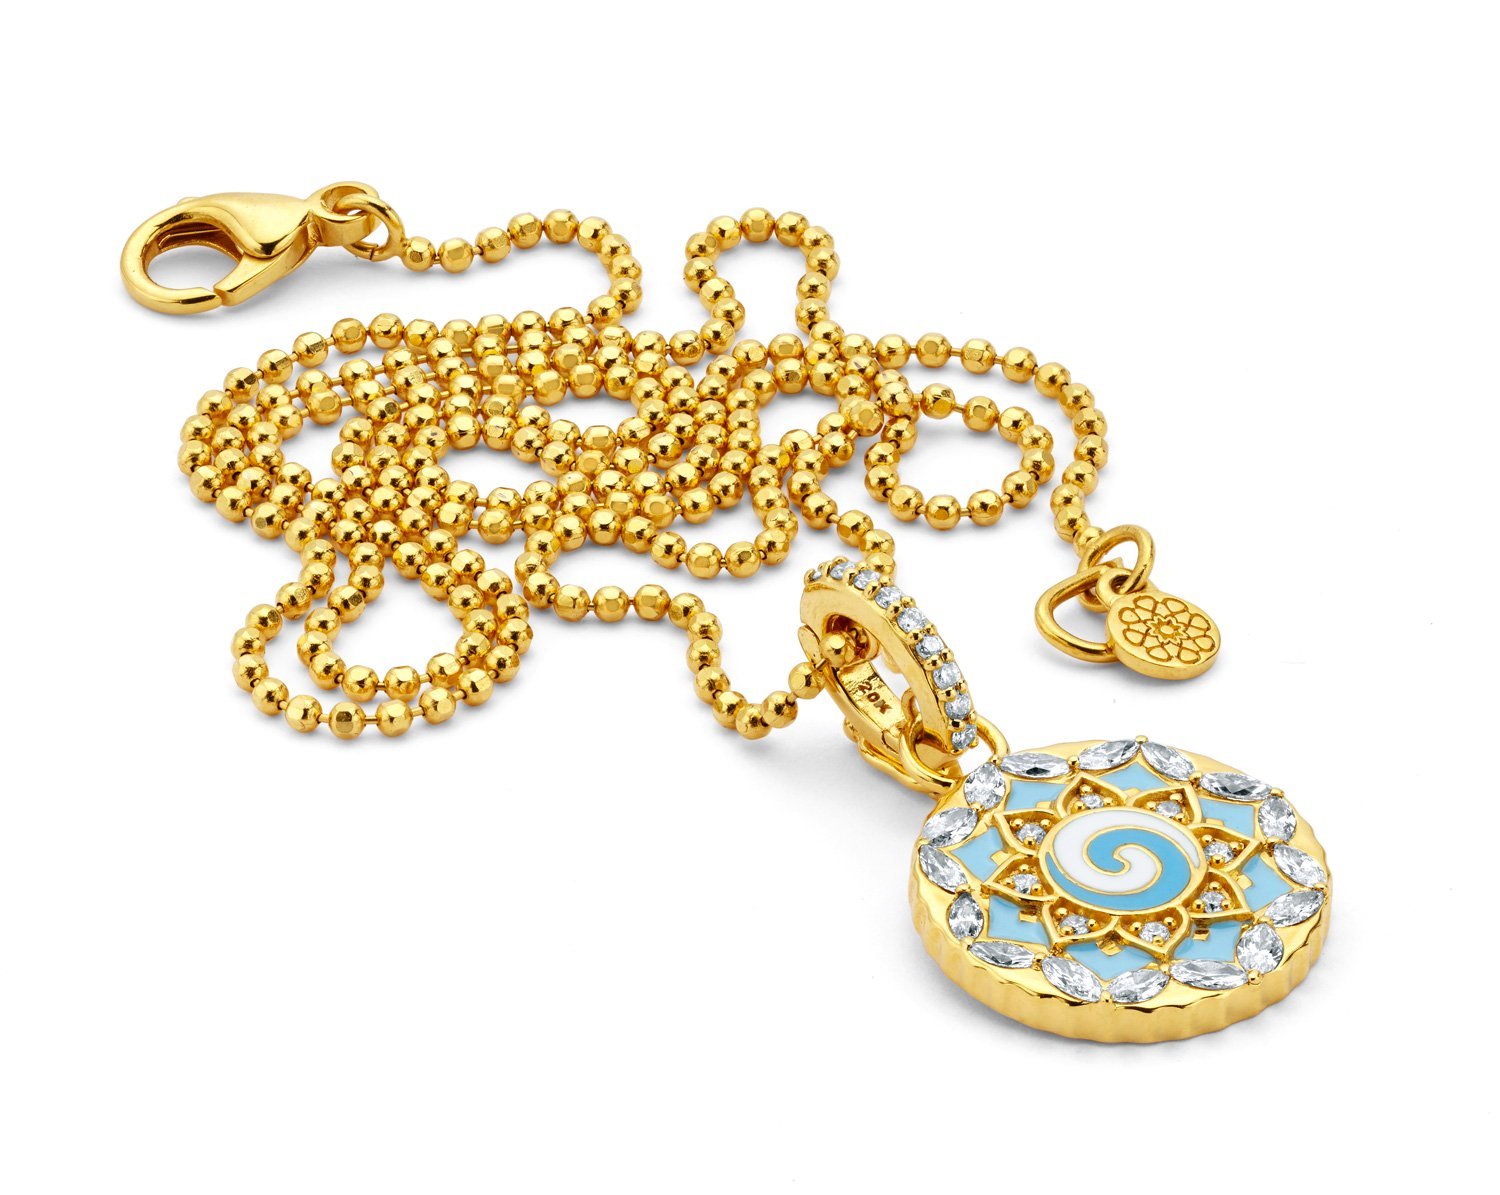 Buddha Mama Sky Blue Mandala Swirl Pendant Necklace in 20kt Yellow Gold